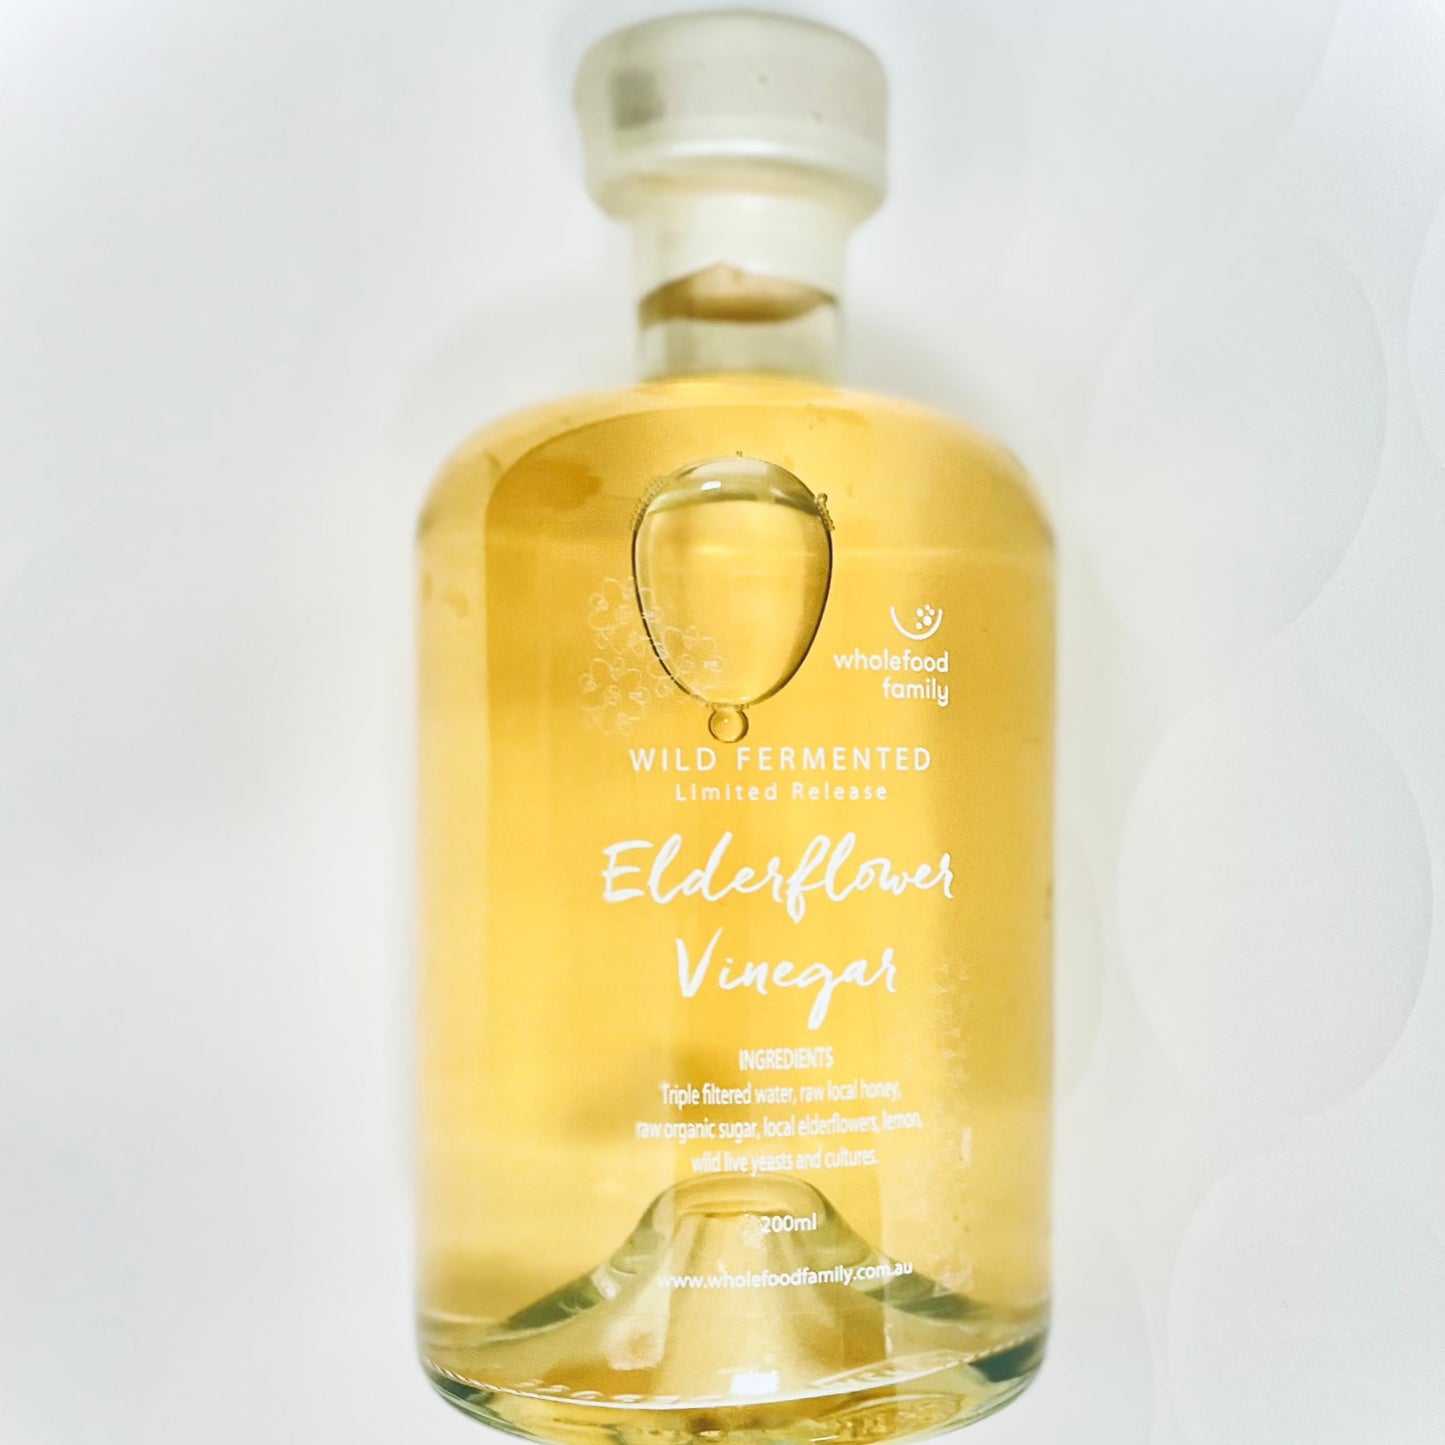 Aged Elderflower & Honey Vinegar